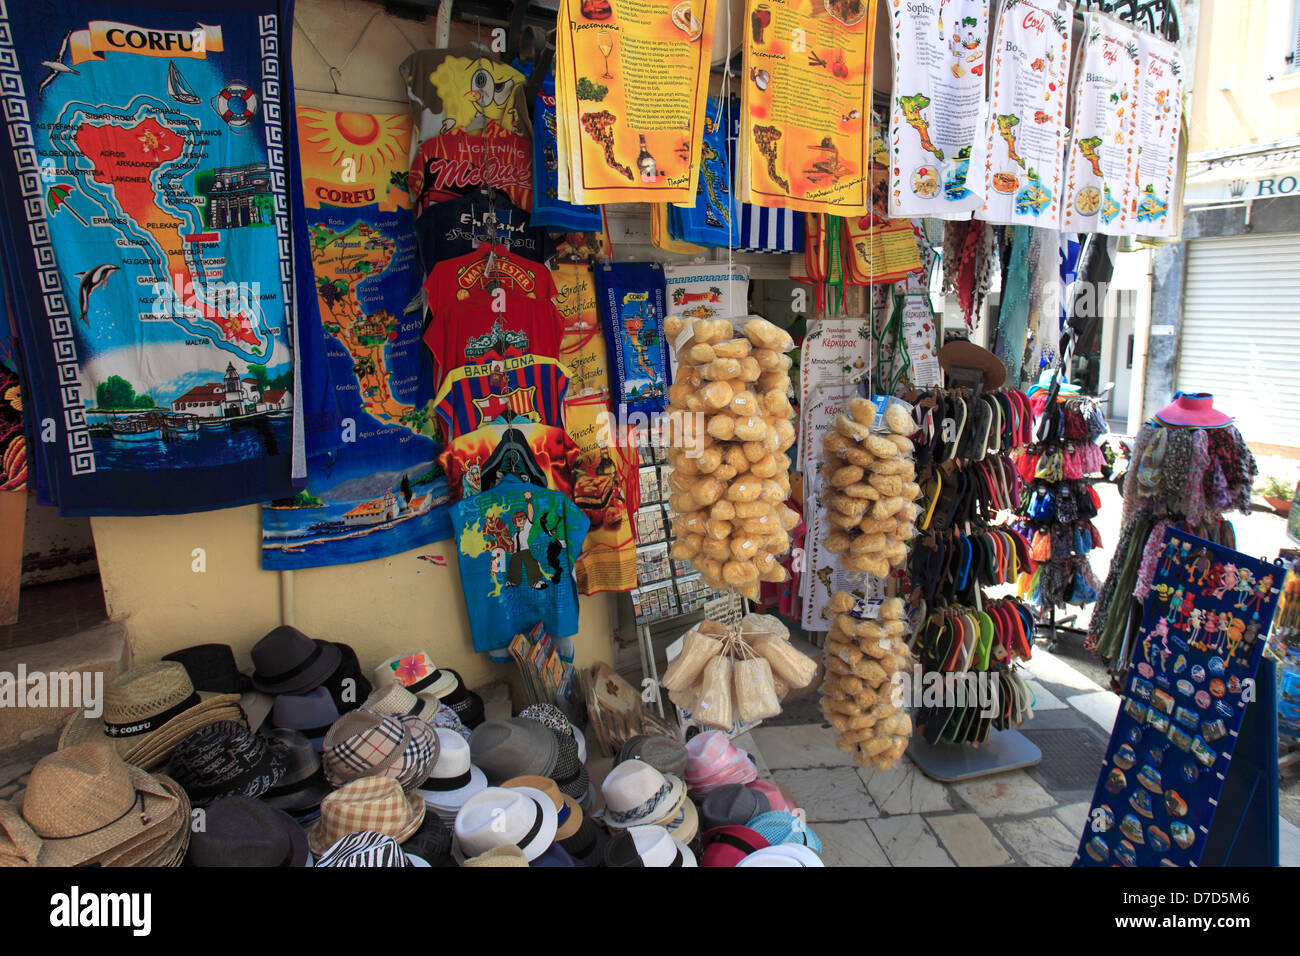 Negozi turistici nel quartiere ebraico e la città di Corfù, l'isola di Corfù, Grecia, Europa Foto Stock